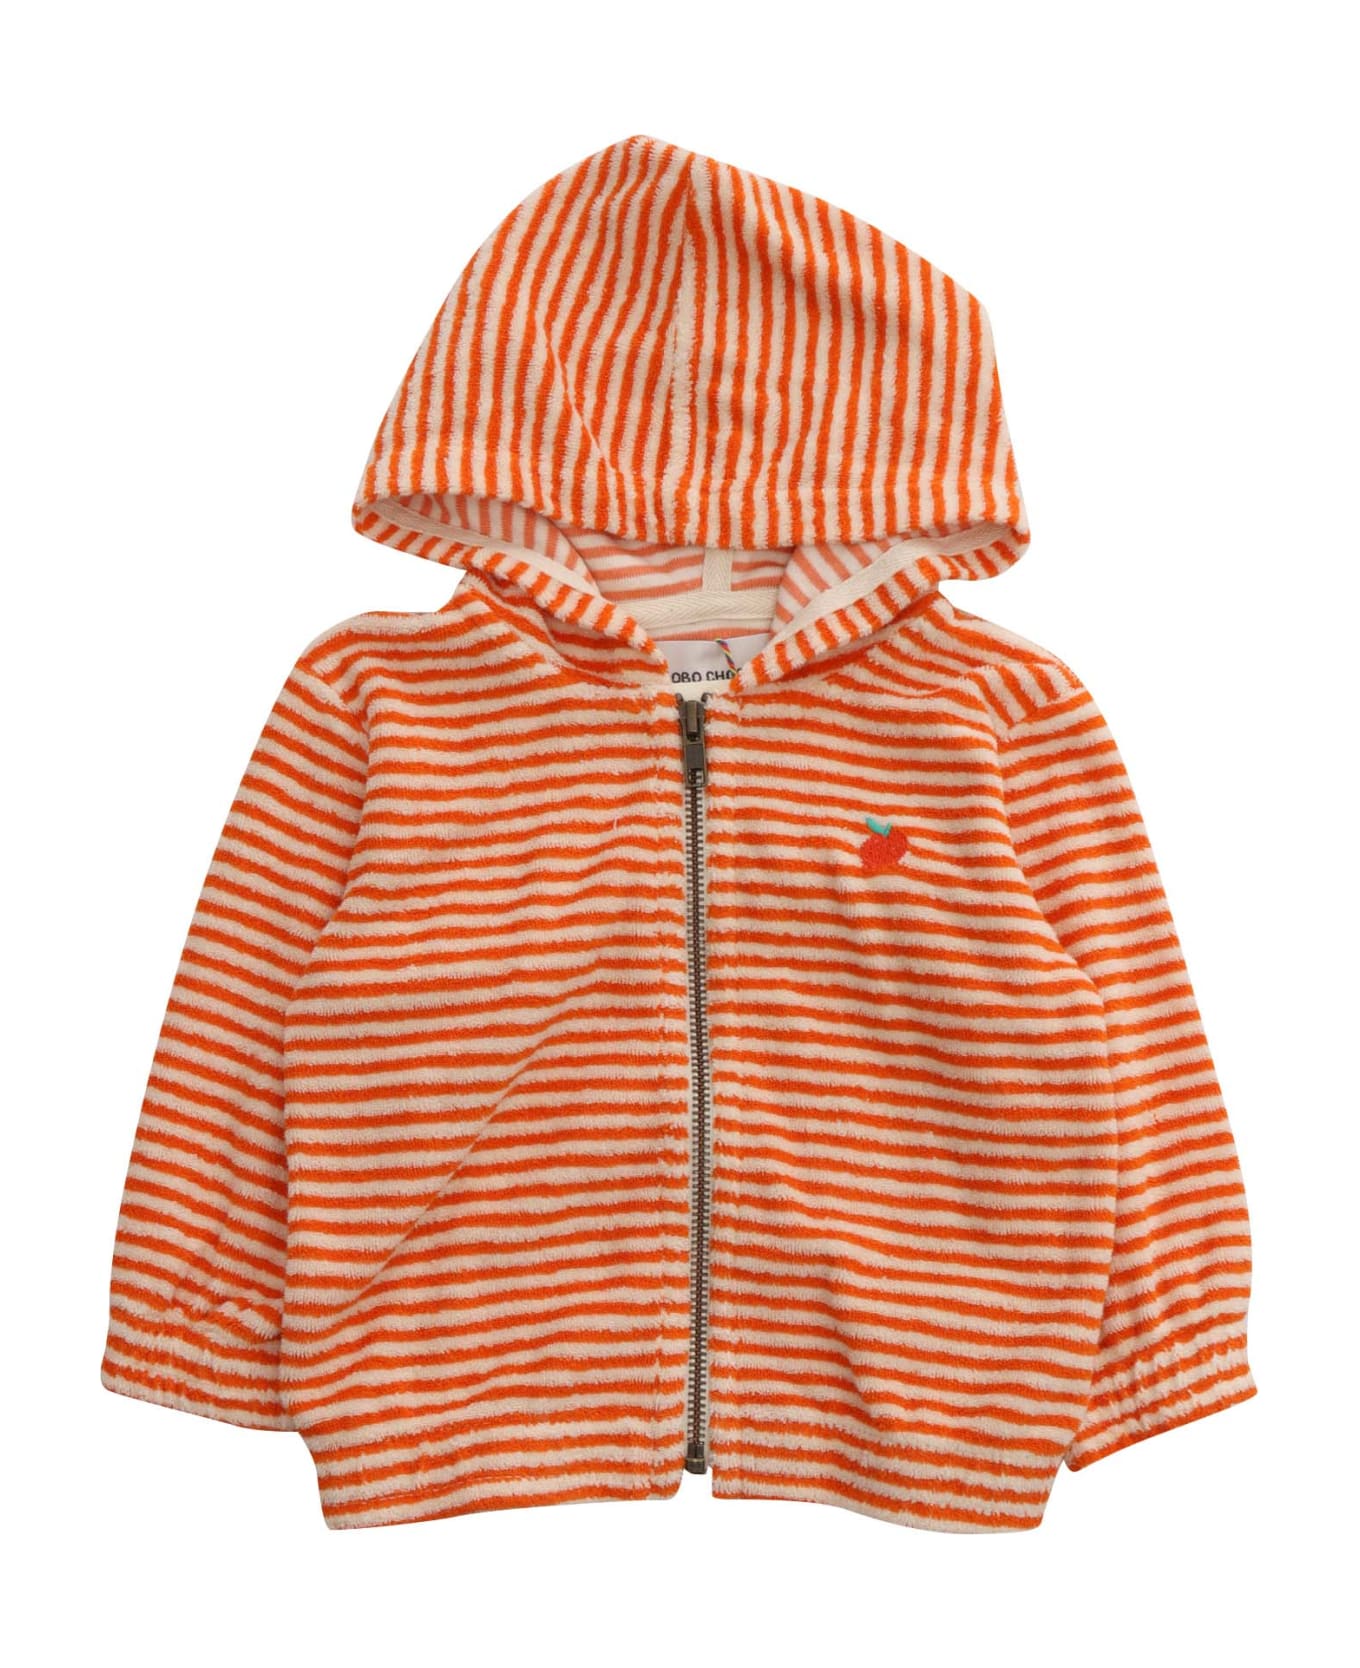 Bobo Choses Orange Hooded Sweatshirt - ORANGE